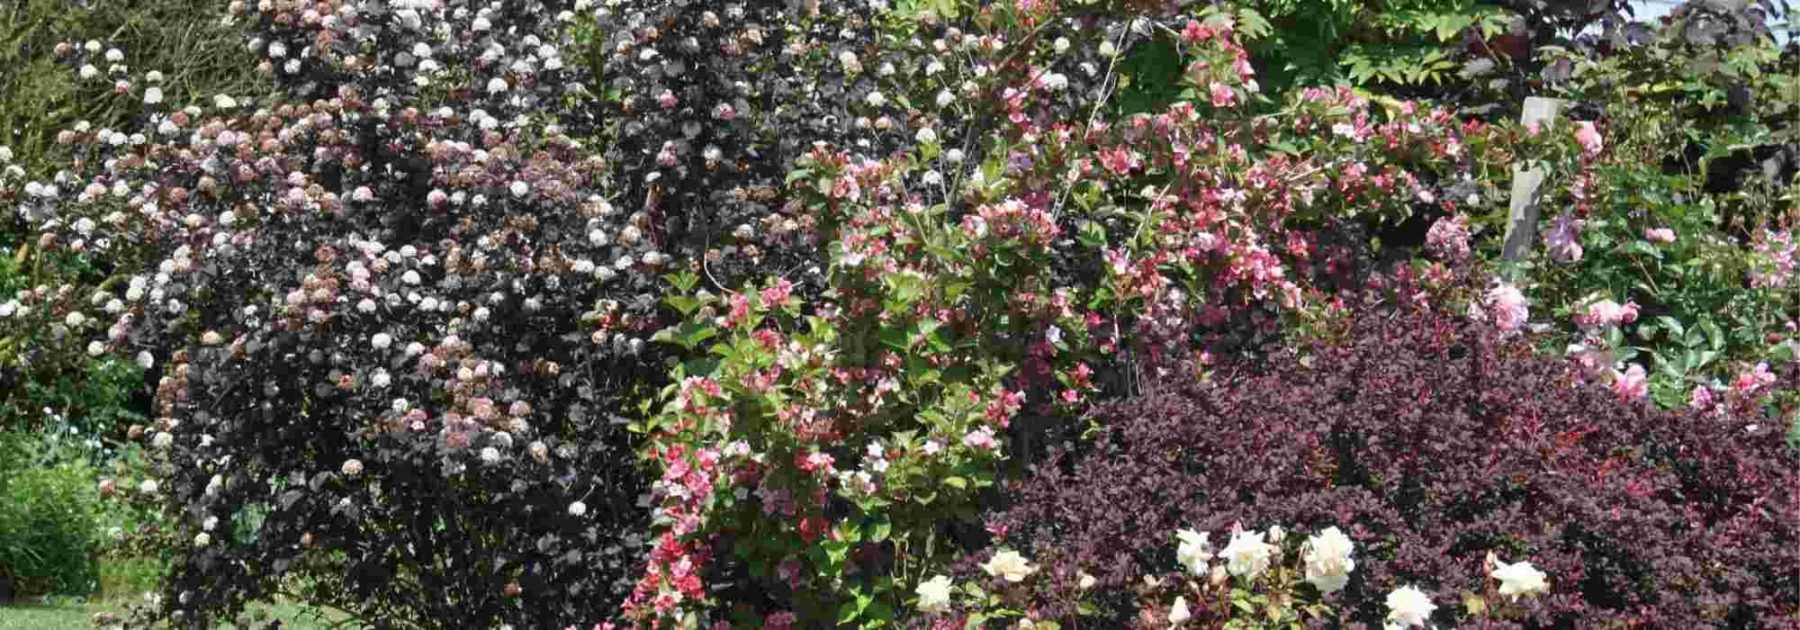 Physocarpus : 5 idées pour l'associer au jardin